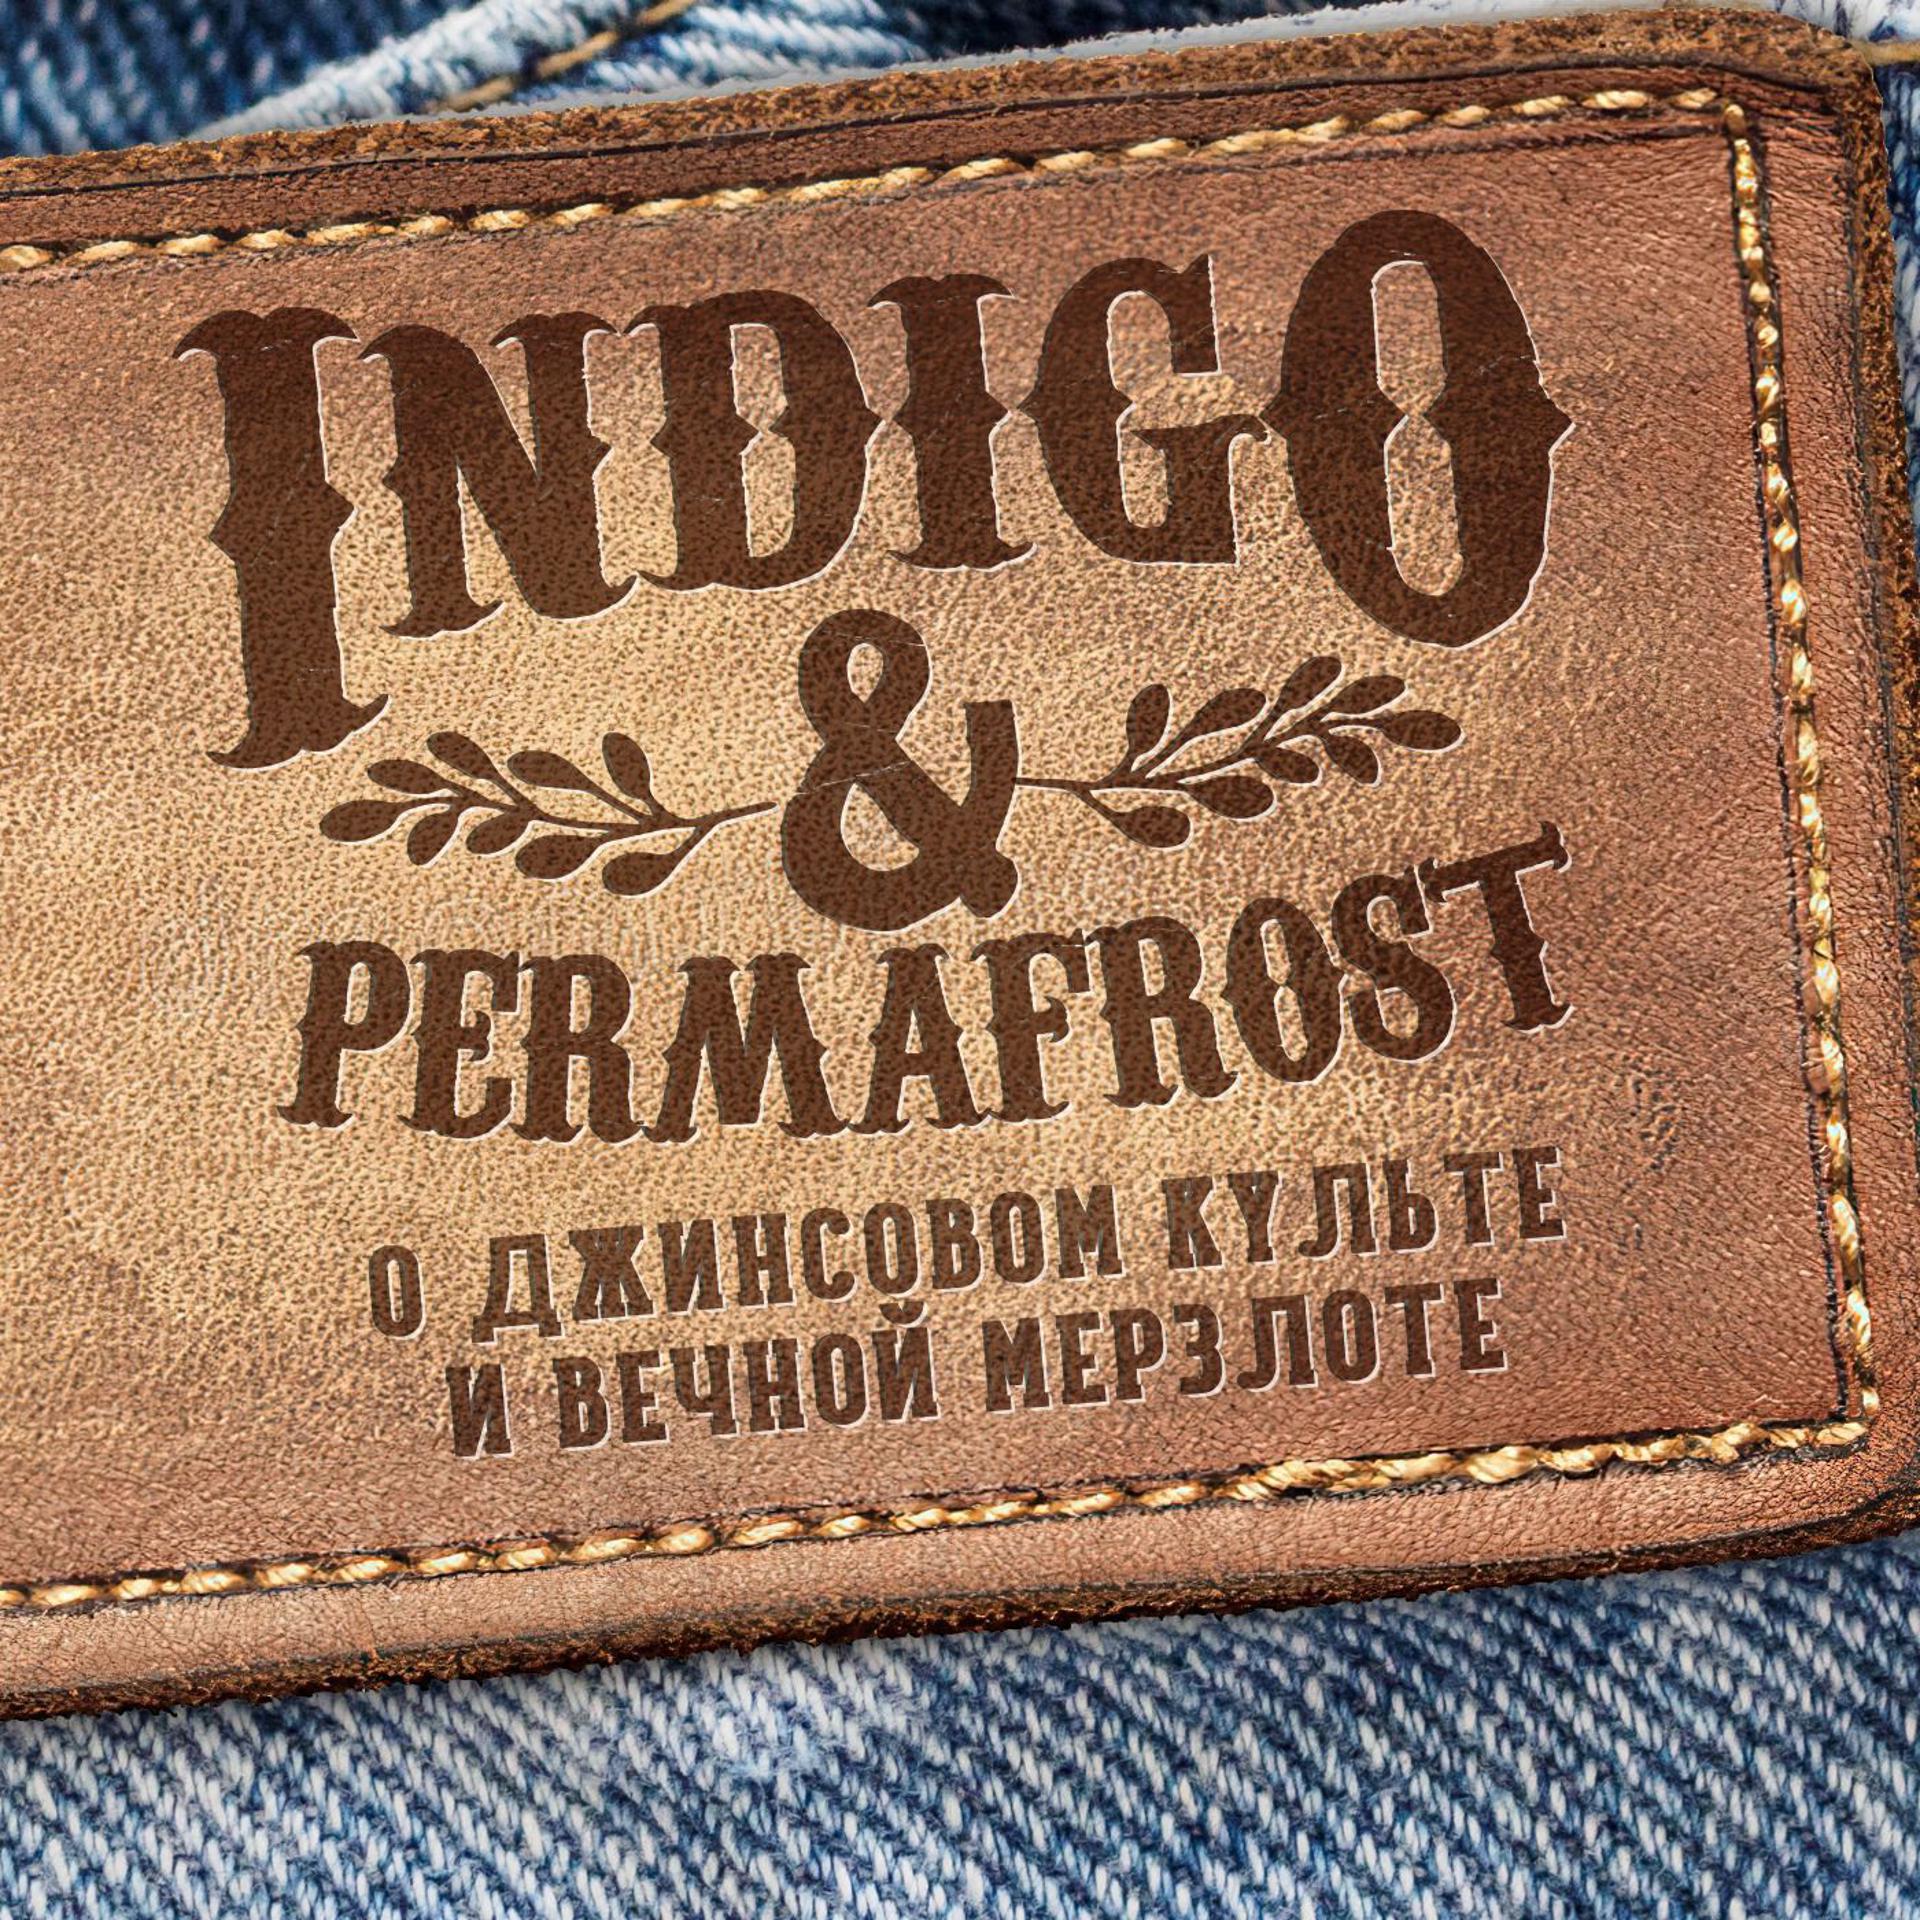 Indigo and Permafrost